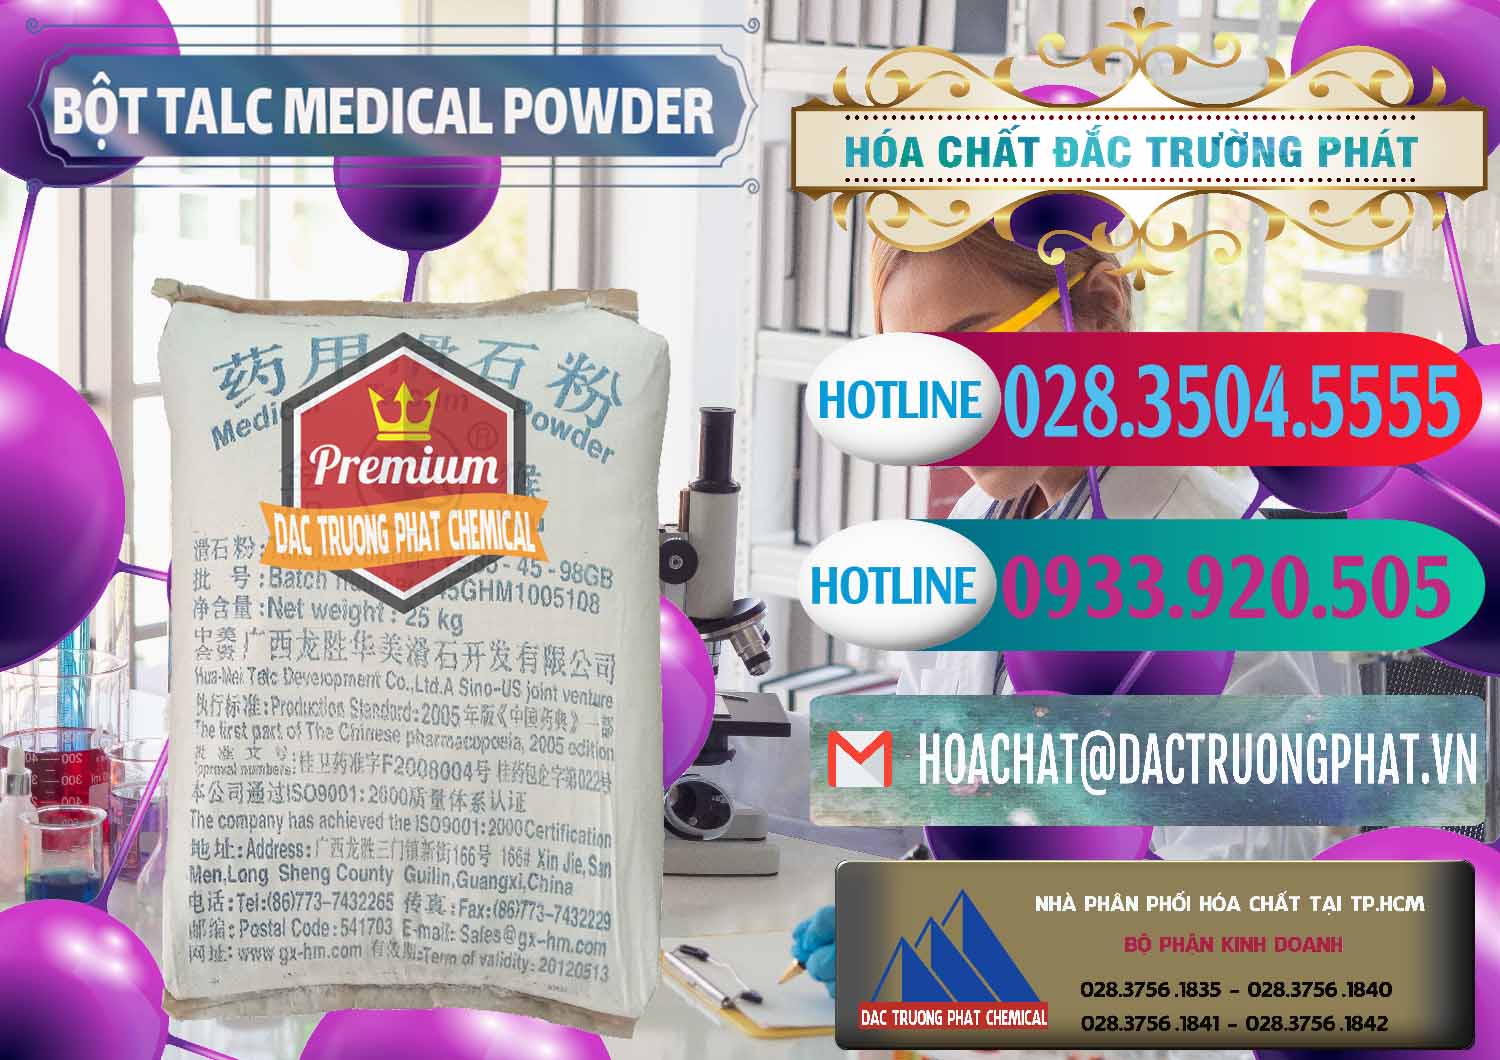 Công ty chuyên cung cấp và bán Bột Talc Medical Powder Trung Quốc China - 0036 - Đơn vị phân phối và bán hóa chất tại TP.HCM - truongphat.vn